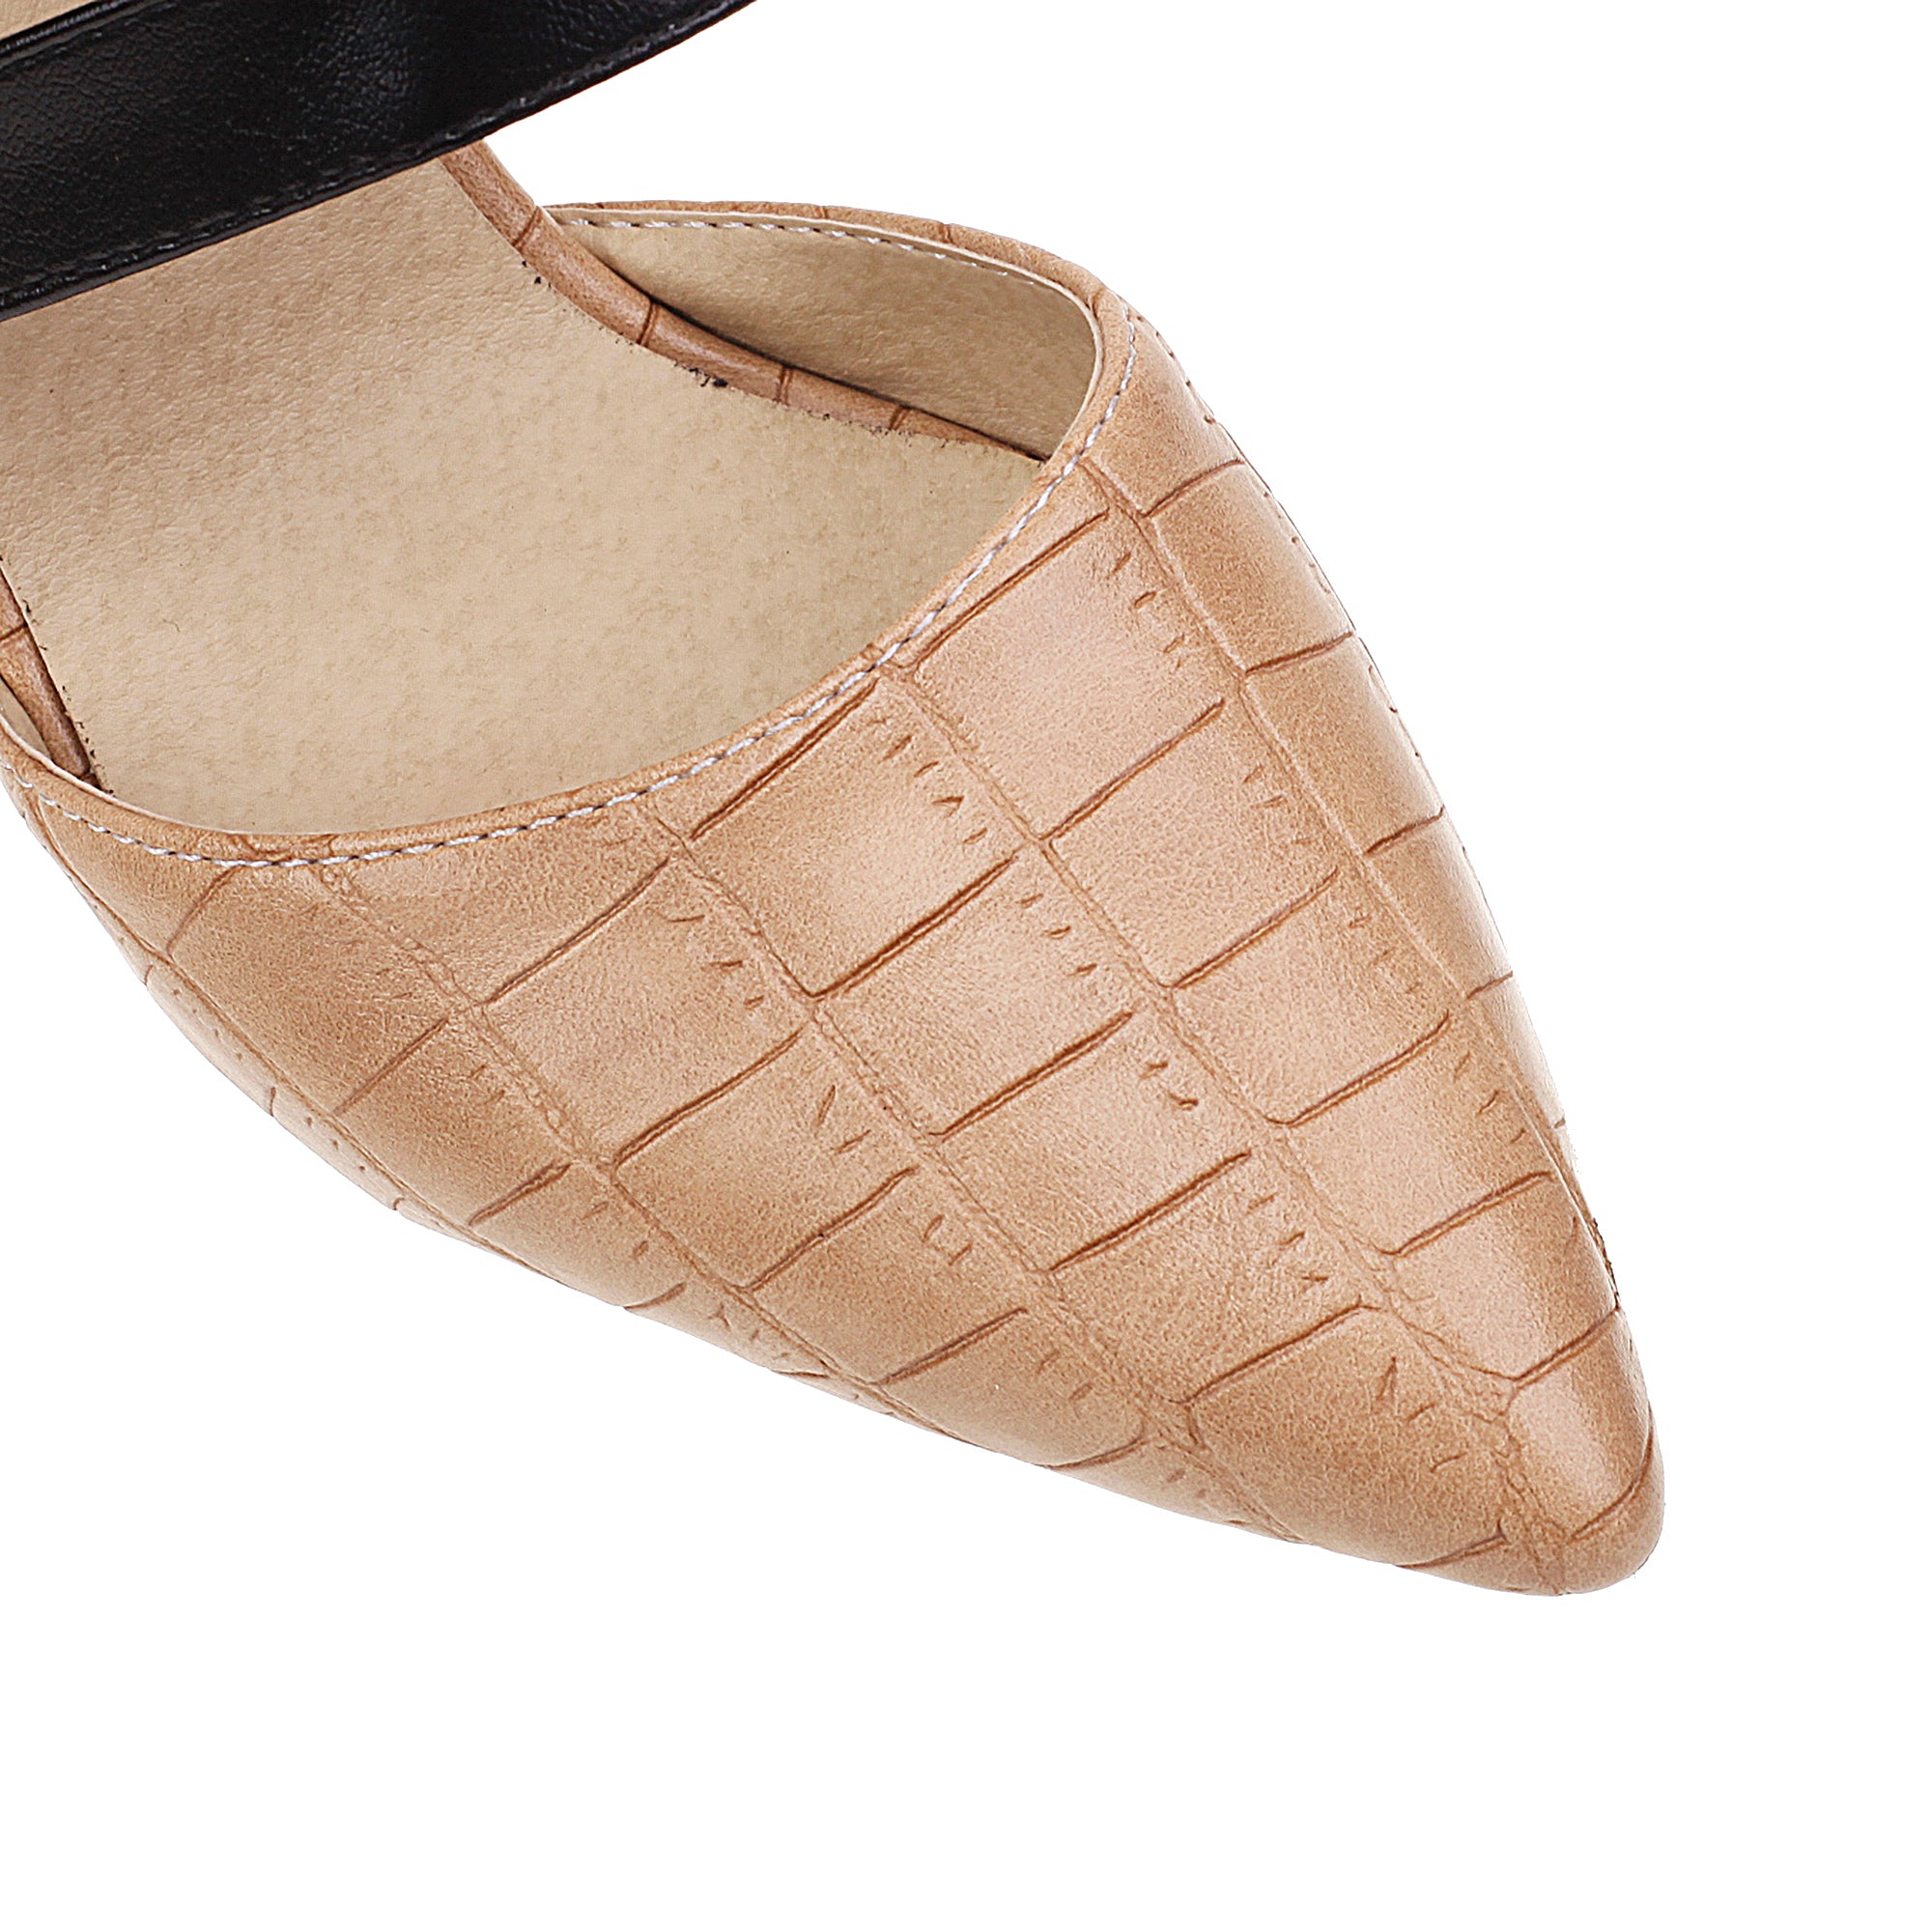 Bigsizeheels T Strap Pointed Toe_Stiletto Heels Sandals - Apricot best oversized womens heels from bigsizeheel®